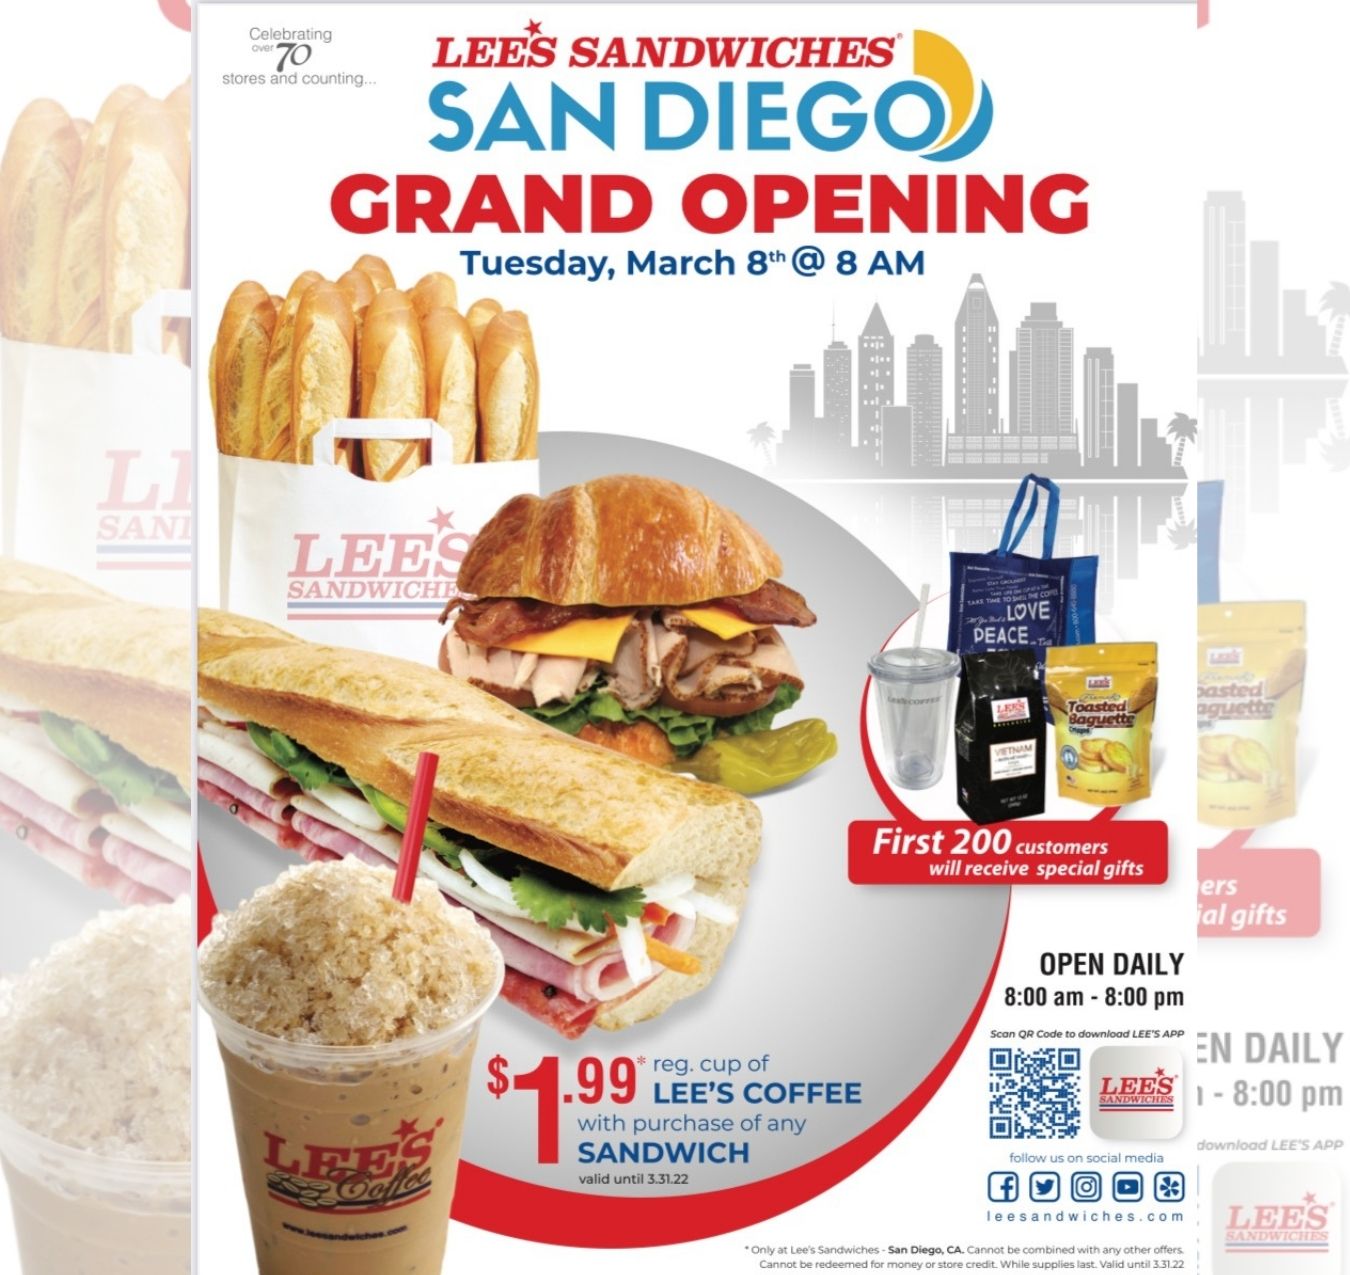 Lee's Sandwiches mở tiệm thứ 71 ở San Diego, thu hút cả ngàn người